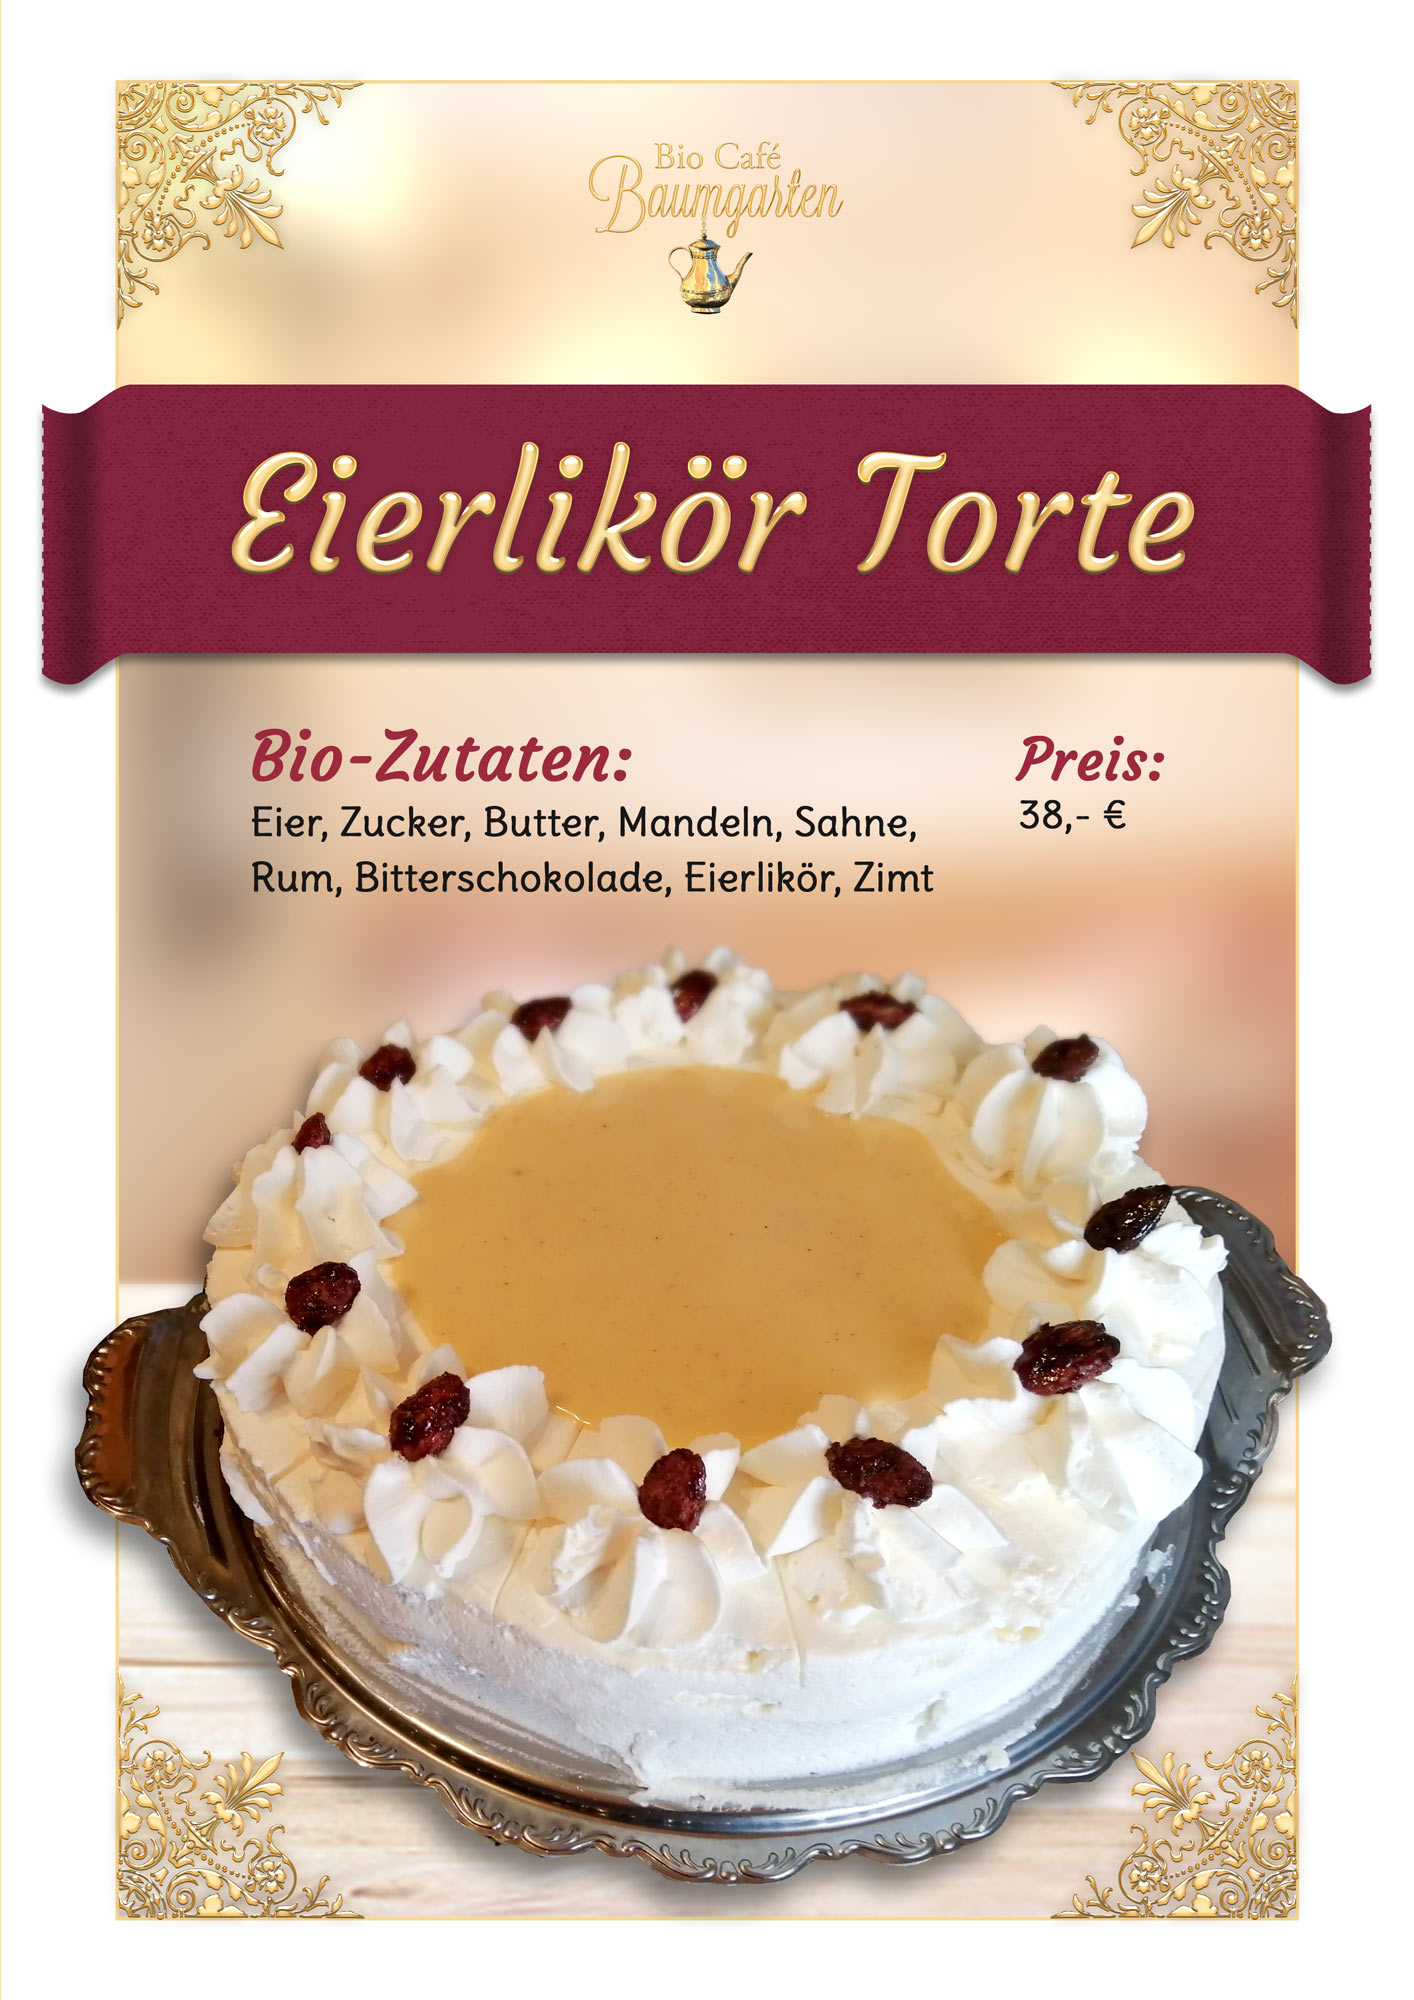 Eierlikoer-Torte